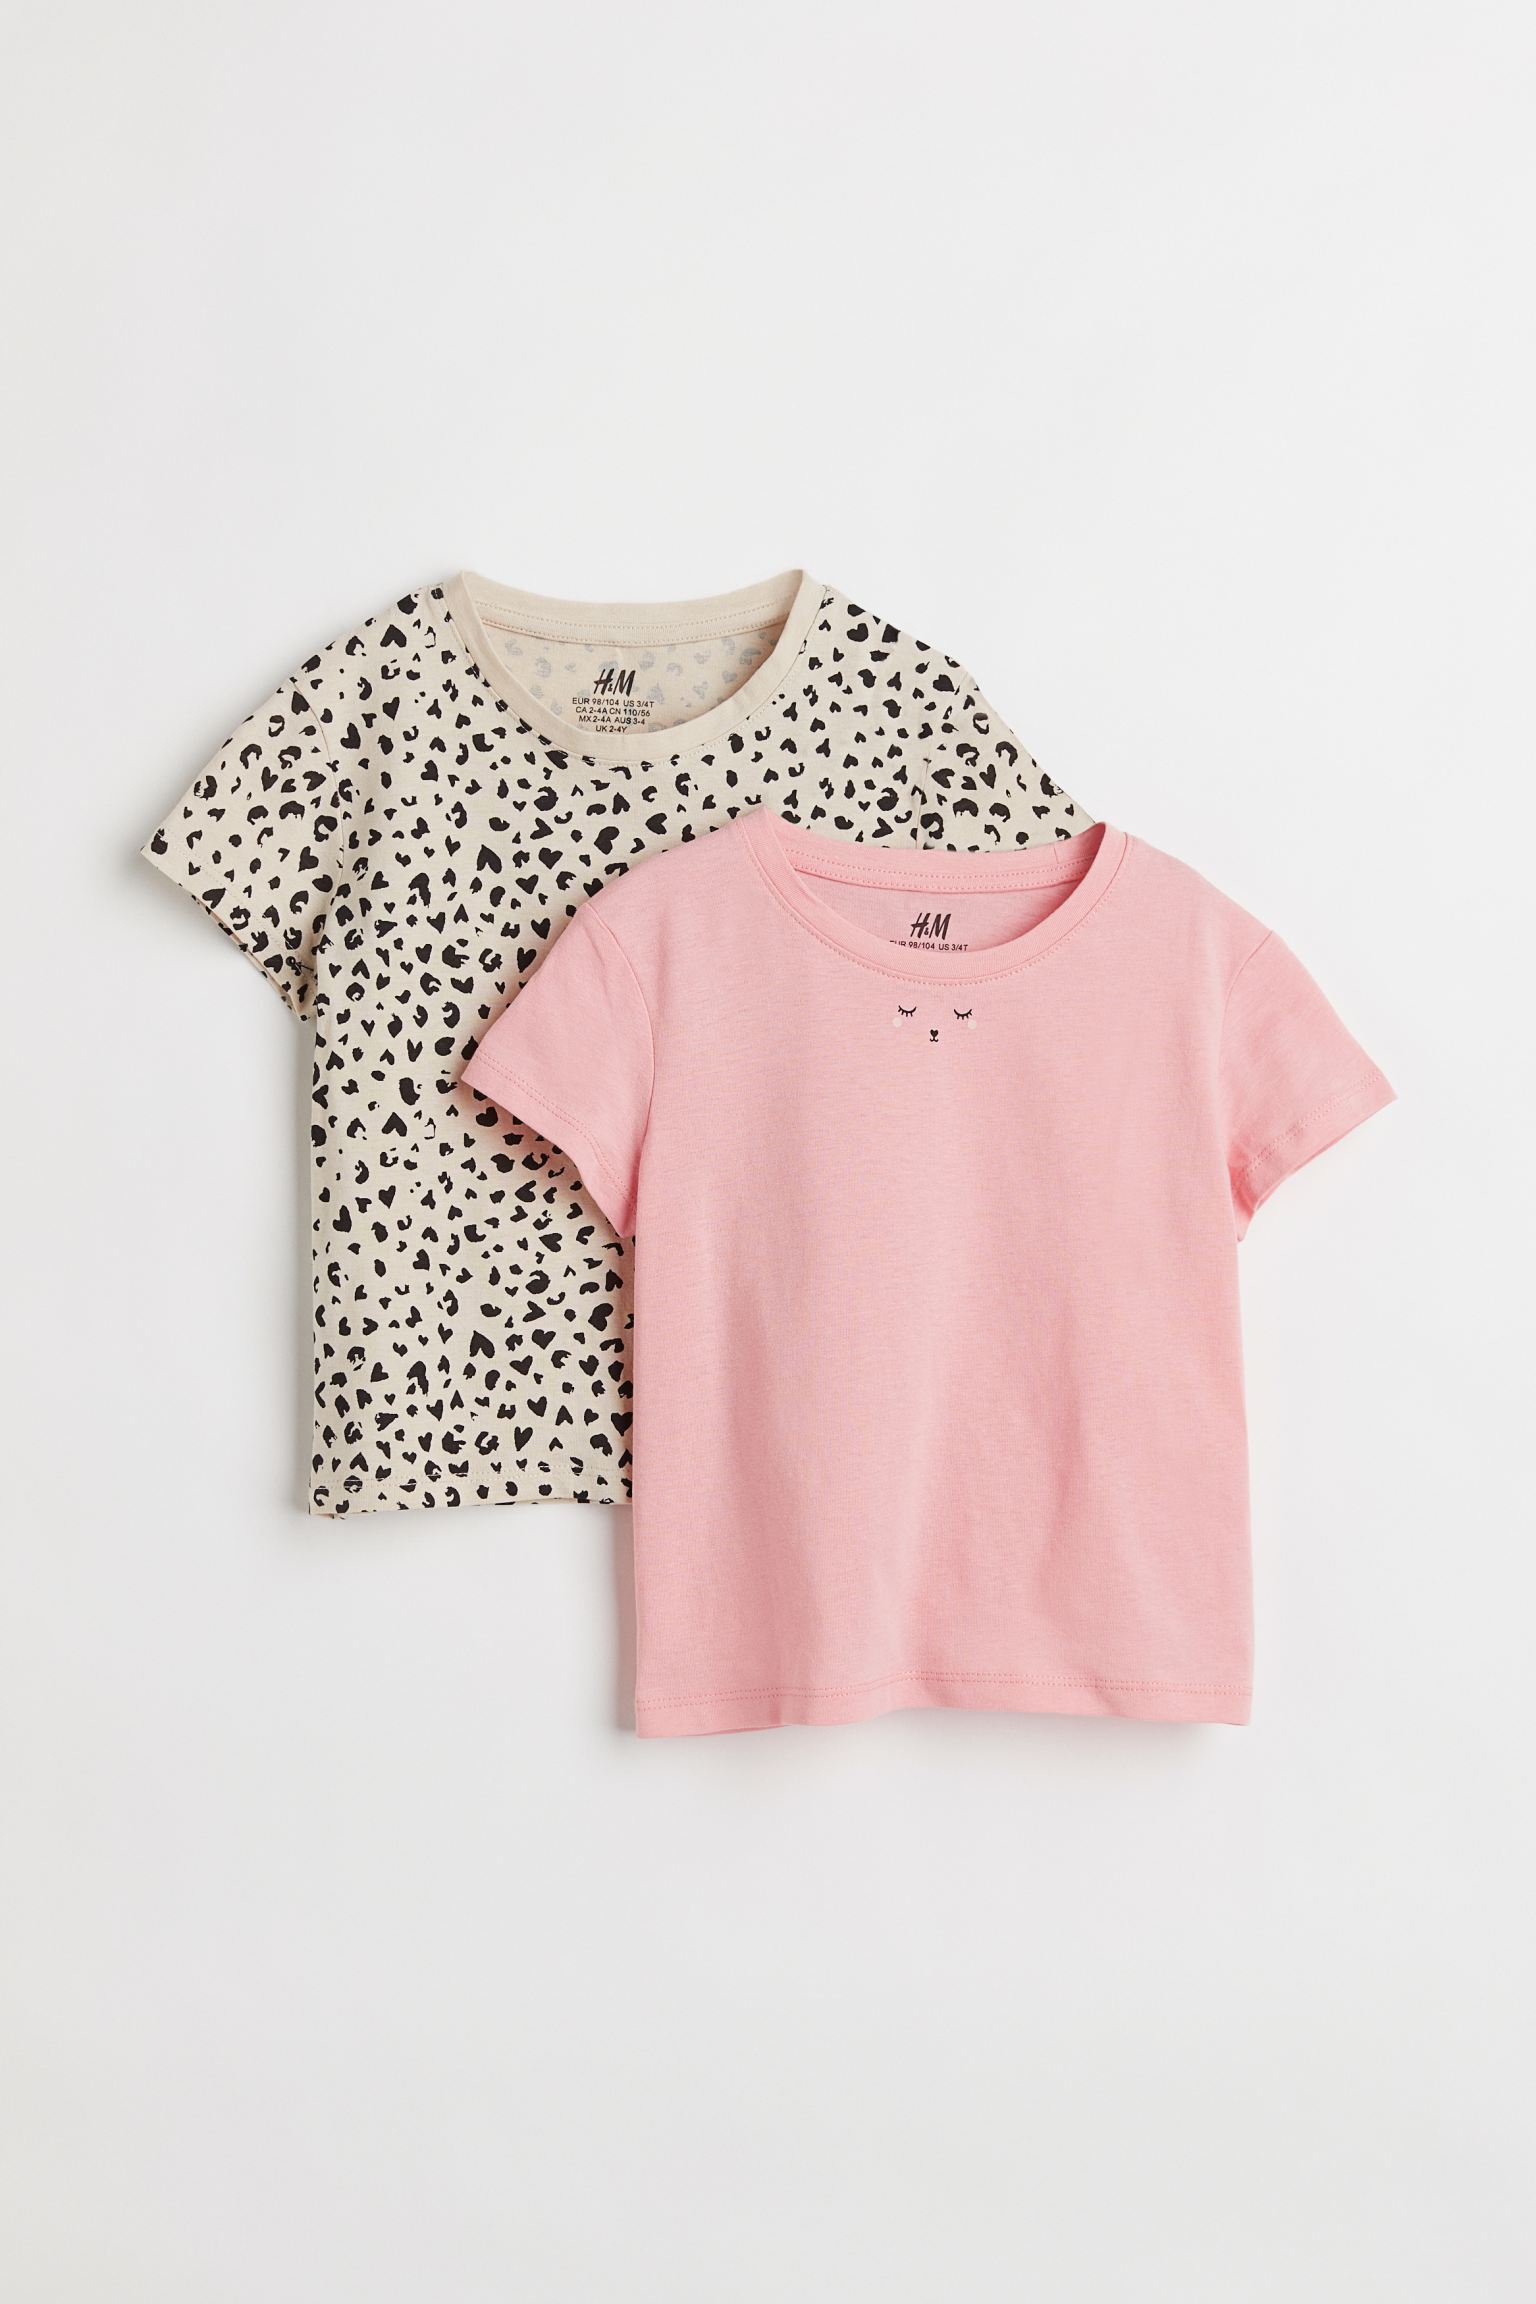 تی شرت دخترانه 35718 سایز 1.5 تا 10 سال کد 2 مارک H&M